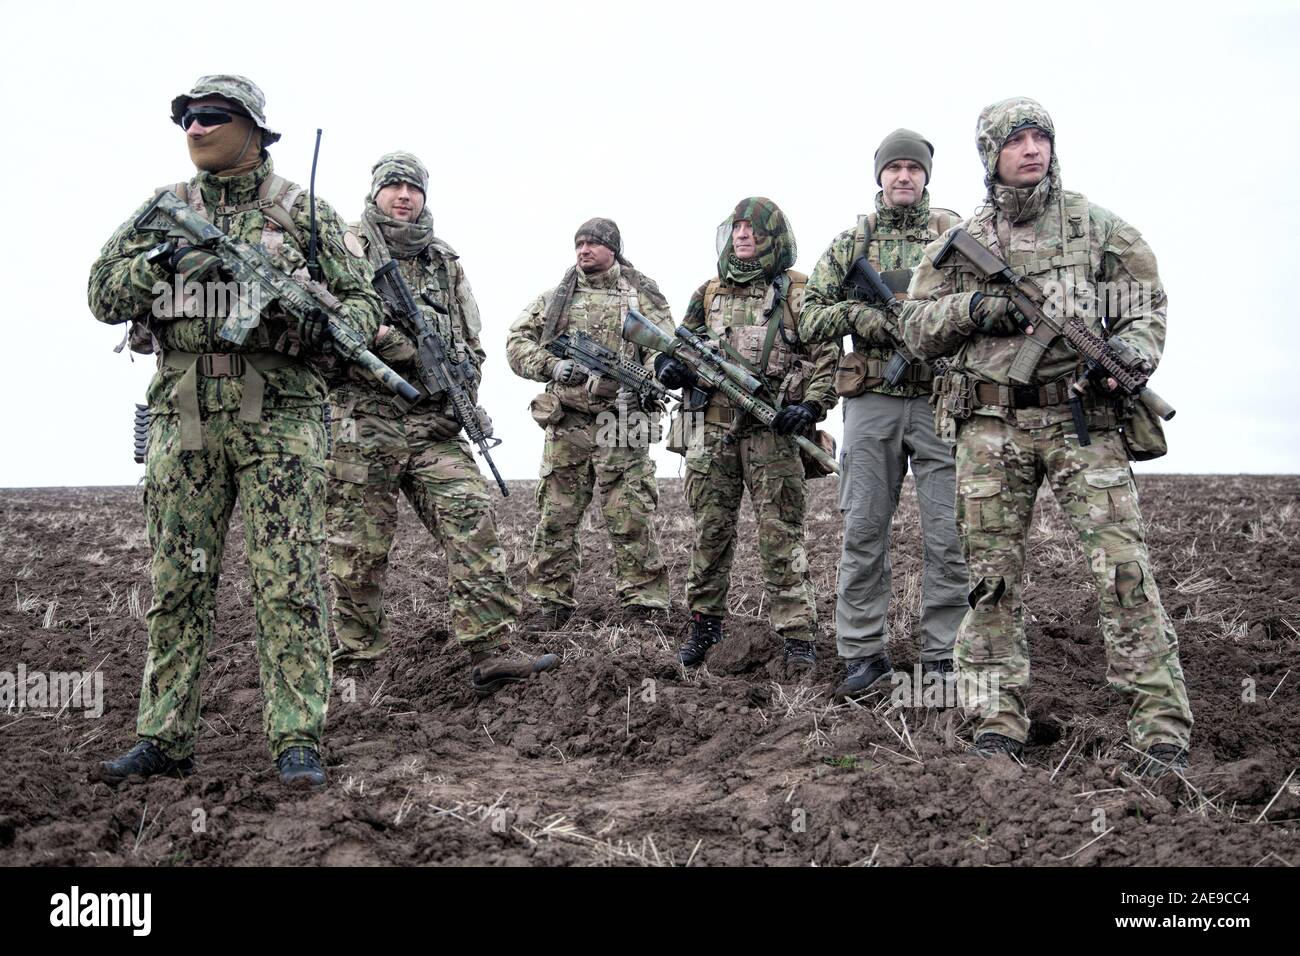 Army soldiers group on march in muddy field aaa aaaa aaaa aaa Stock Photo